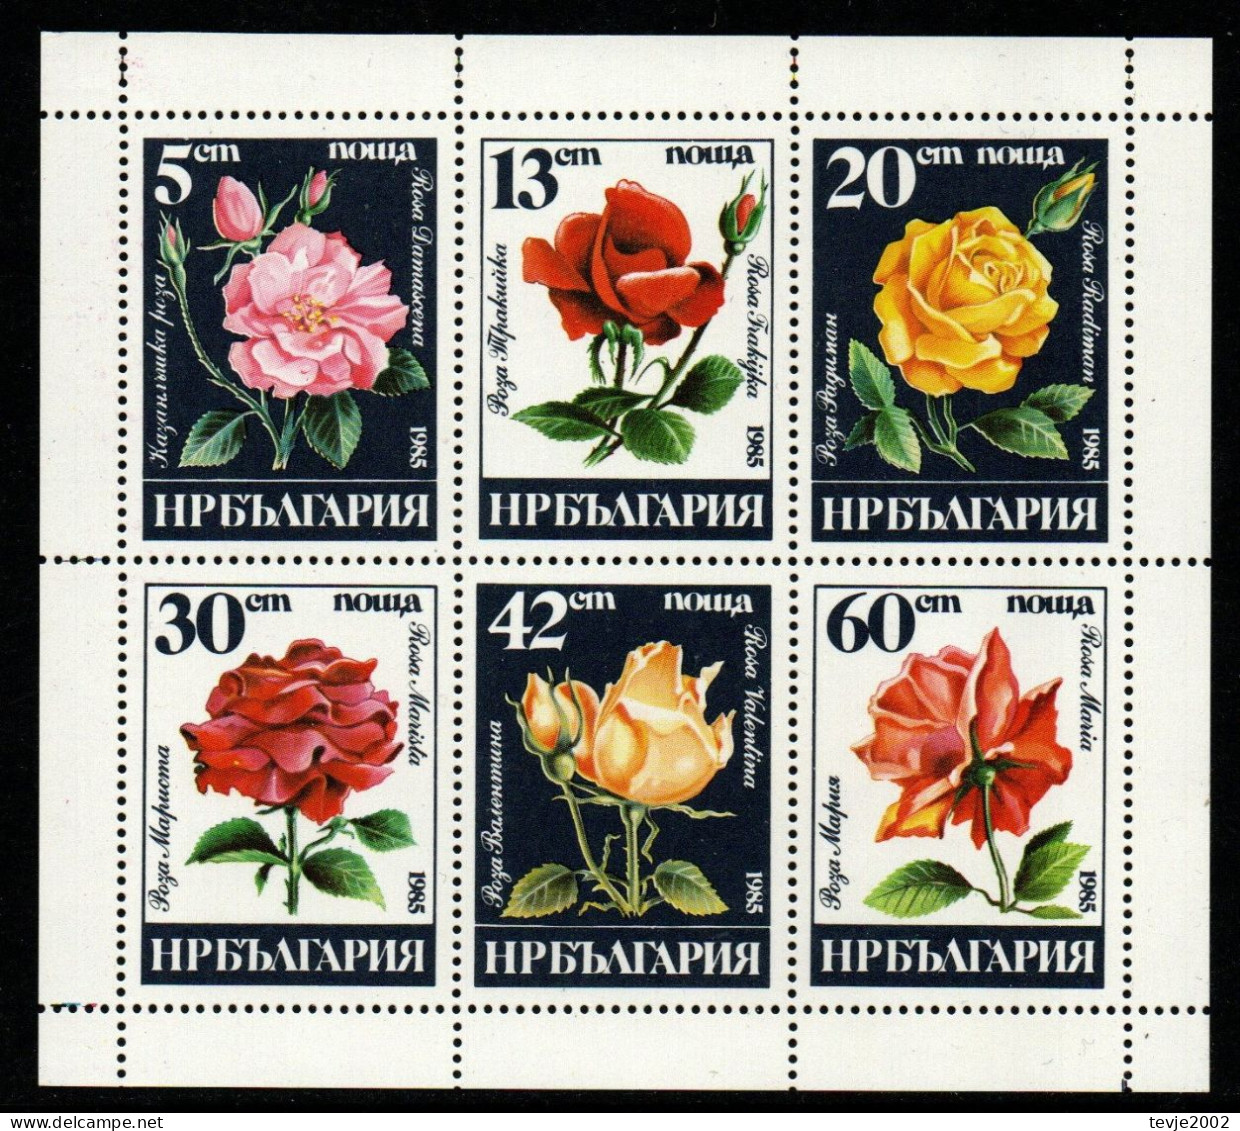 Bulgarien 1985 - Mi.Nr. 3373 - 3378 Kleinbogen - Postfrisch MNH - Blumen Flowers Rosen Roses - Rosen